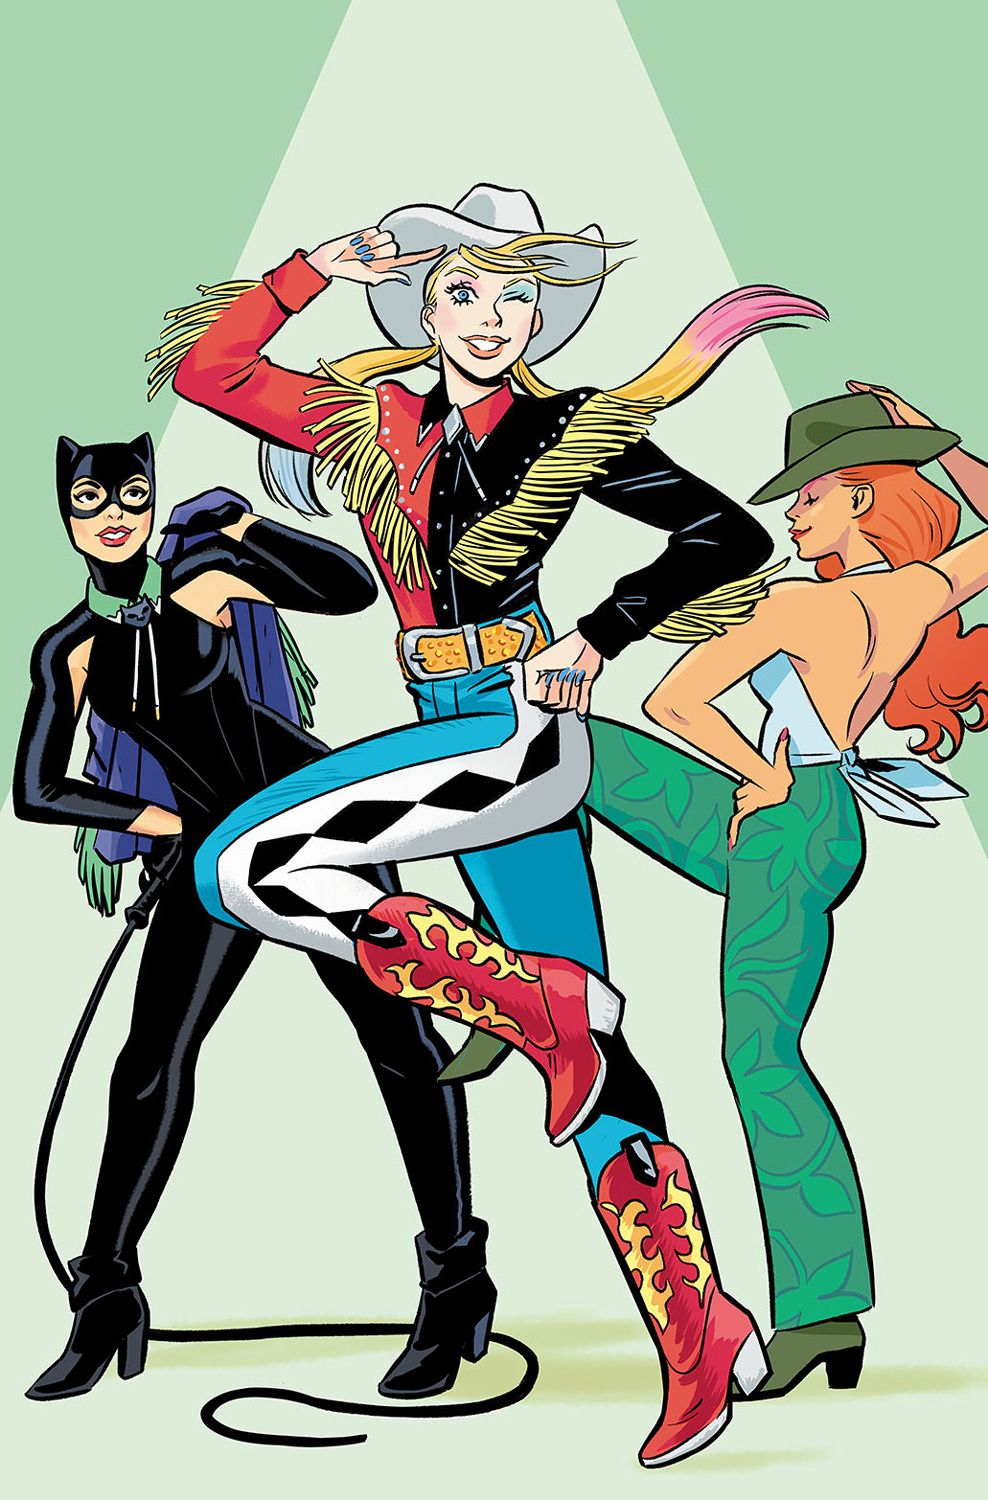 Kobieta-Kot, Harley Quinn i Poison Ivy przyjmują głupie pozy w skórzanych kurtkach z frędzlami, kowbojskich butach i innych zachodnich strojach na wariantowej okładce Gotham City Sirens #3.